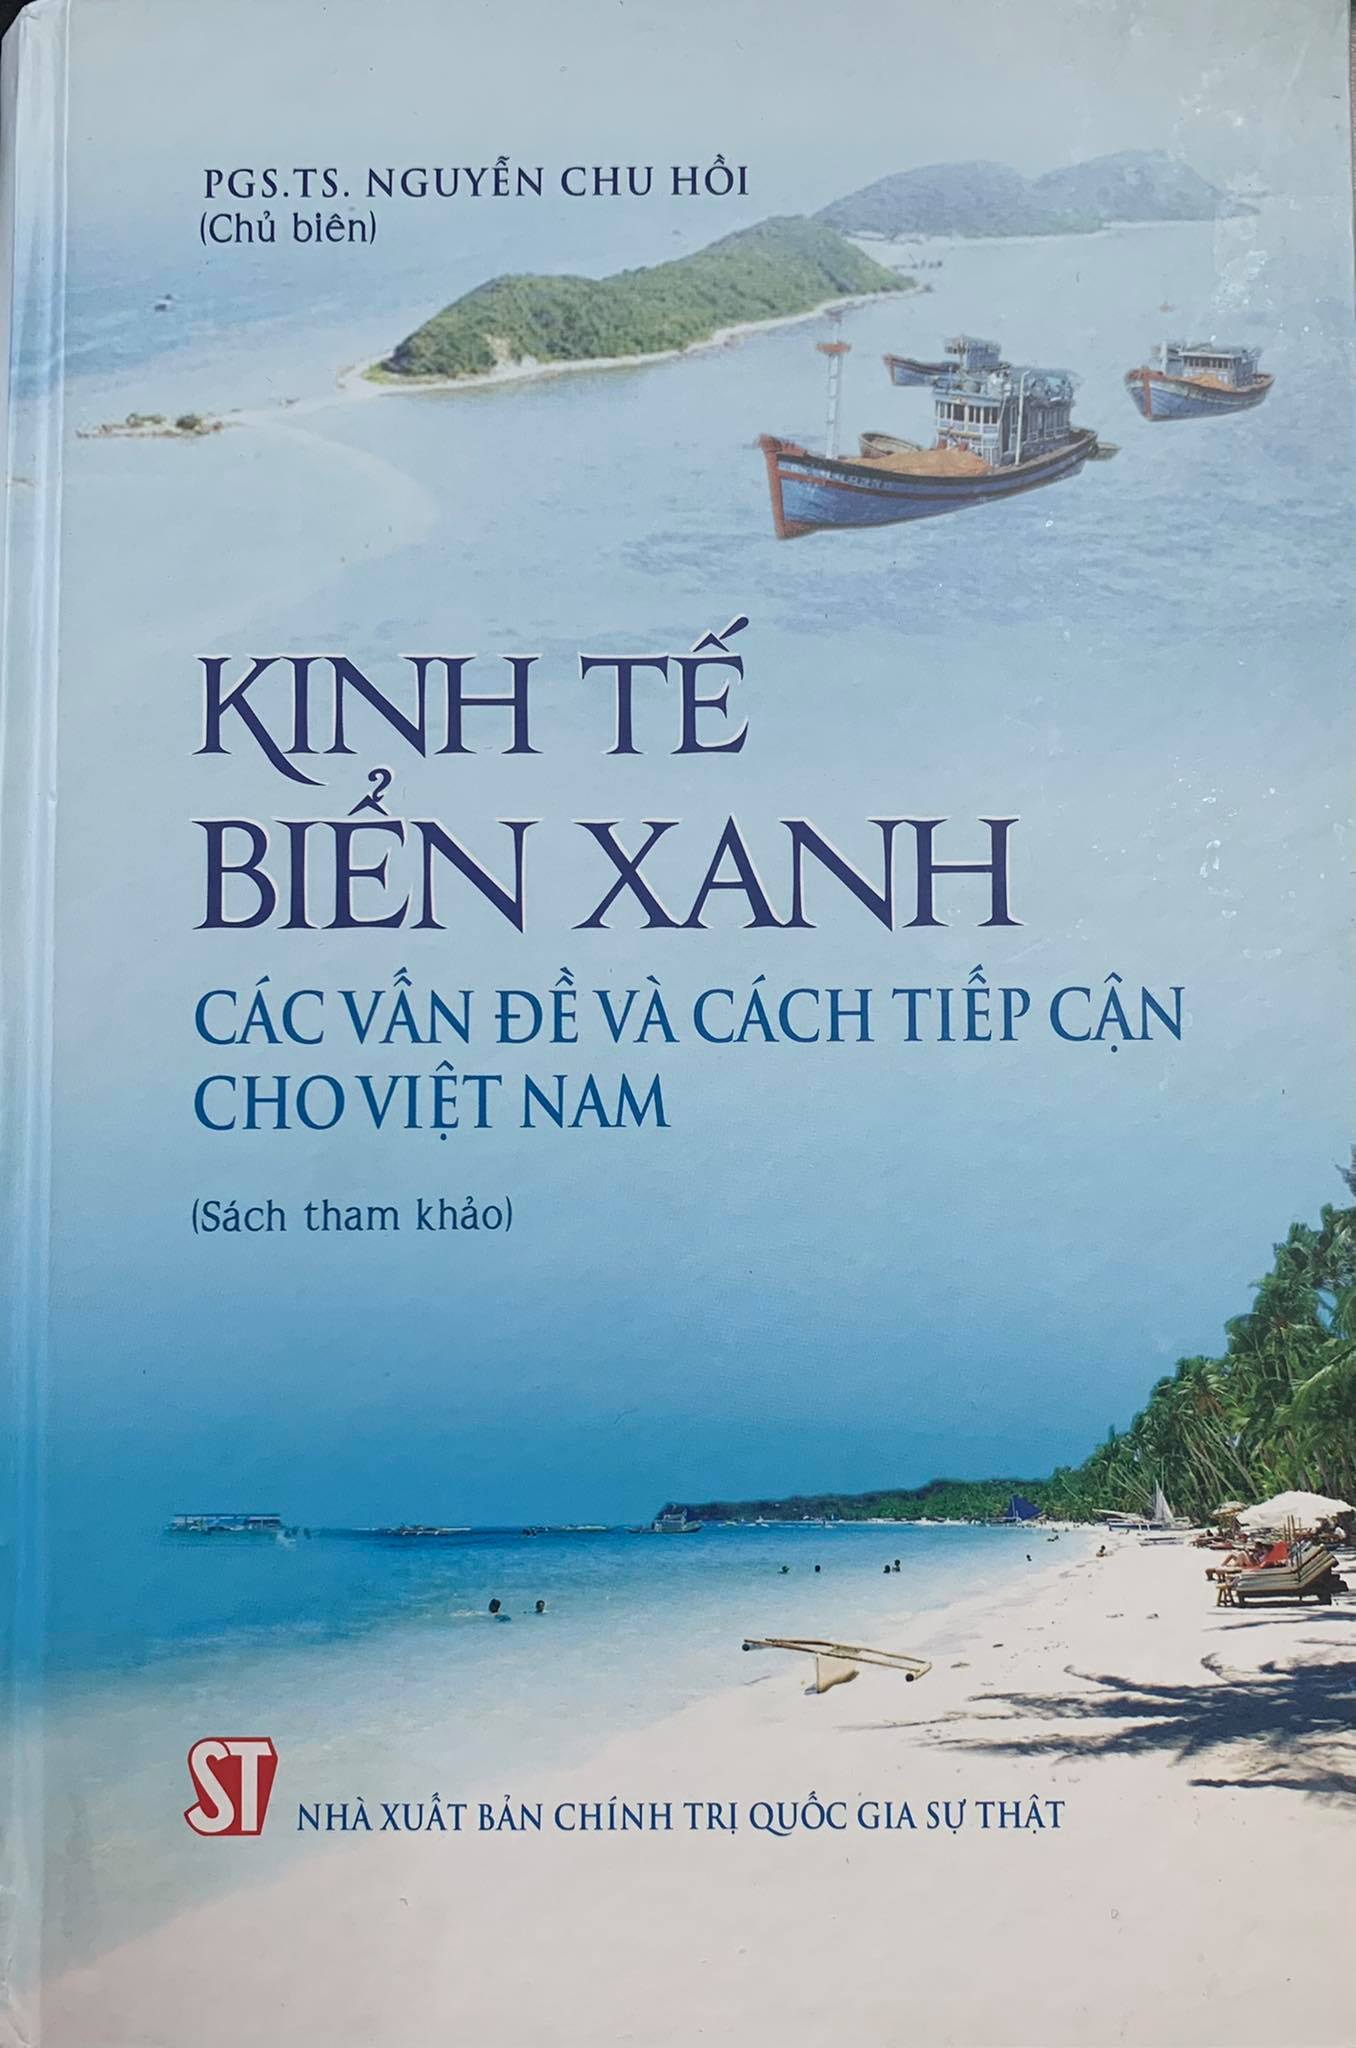 Kinh tế biển xanh - Các vấn đề và cách tiếp cận cho Việt Nam (Sách tham khảo)